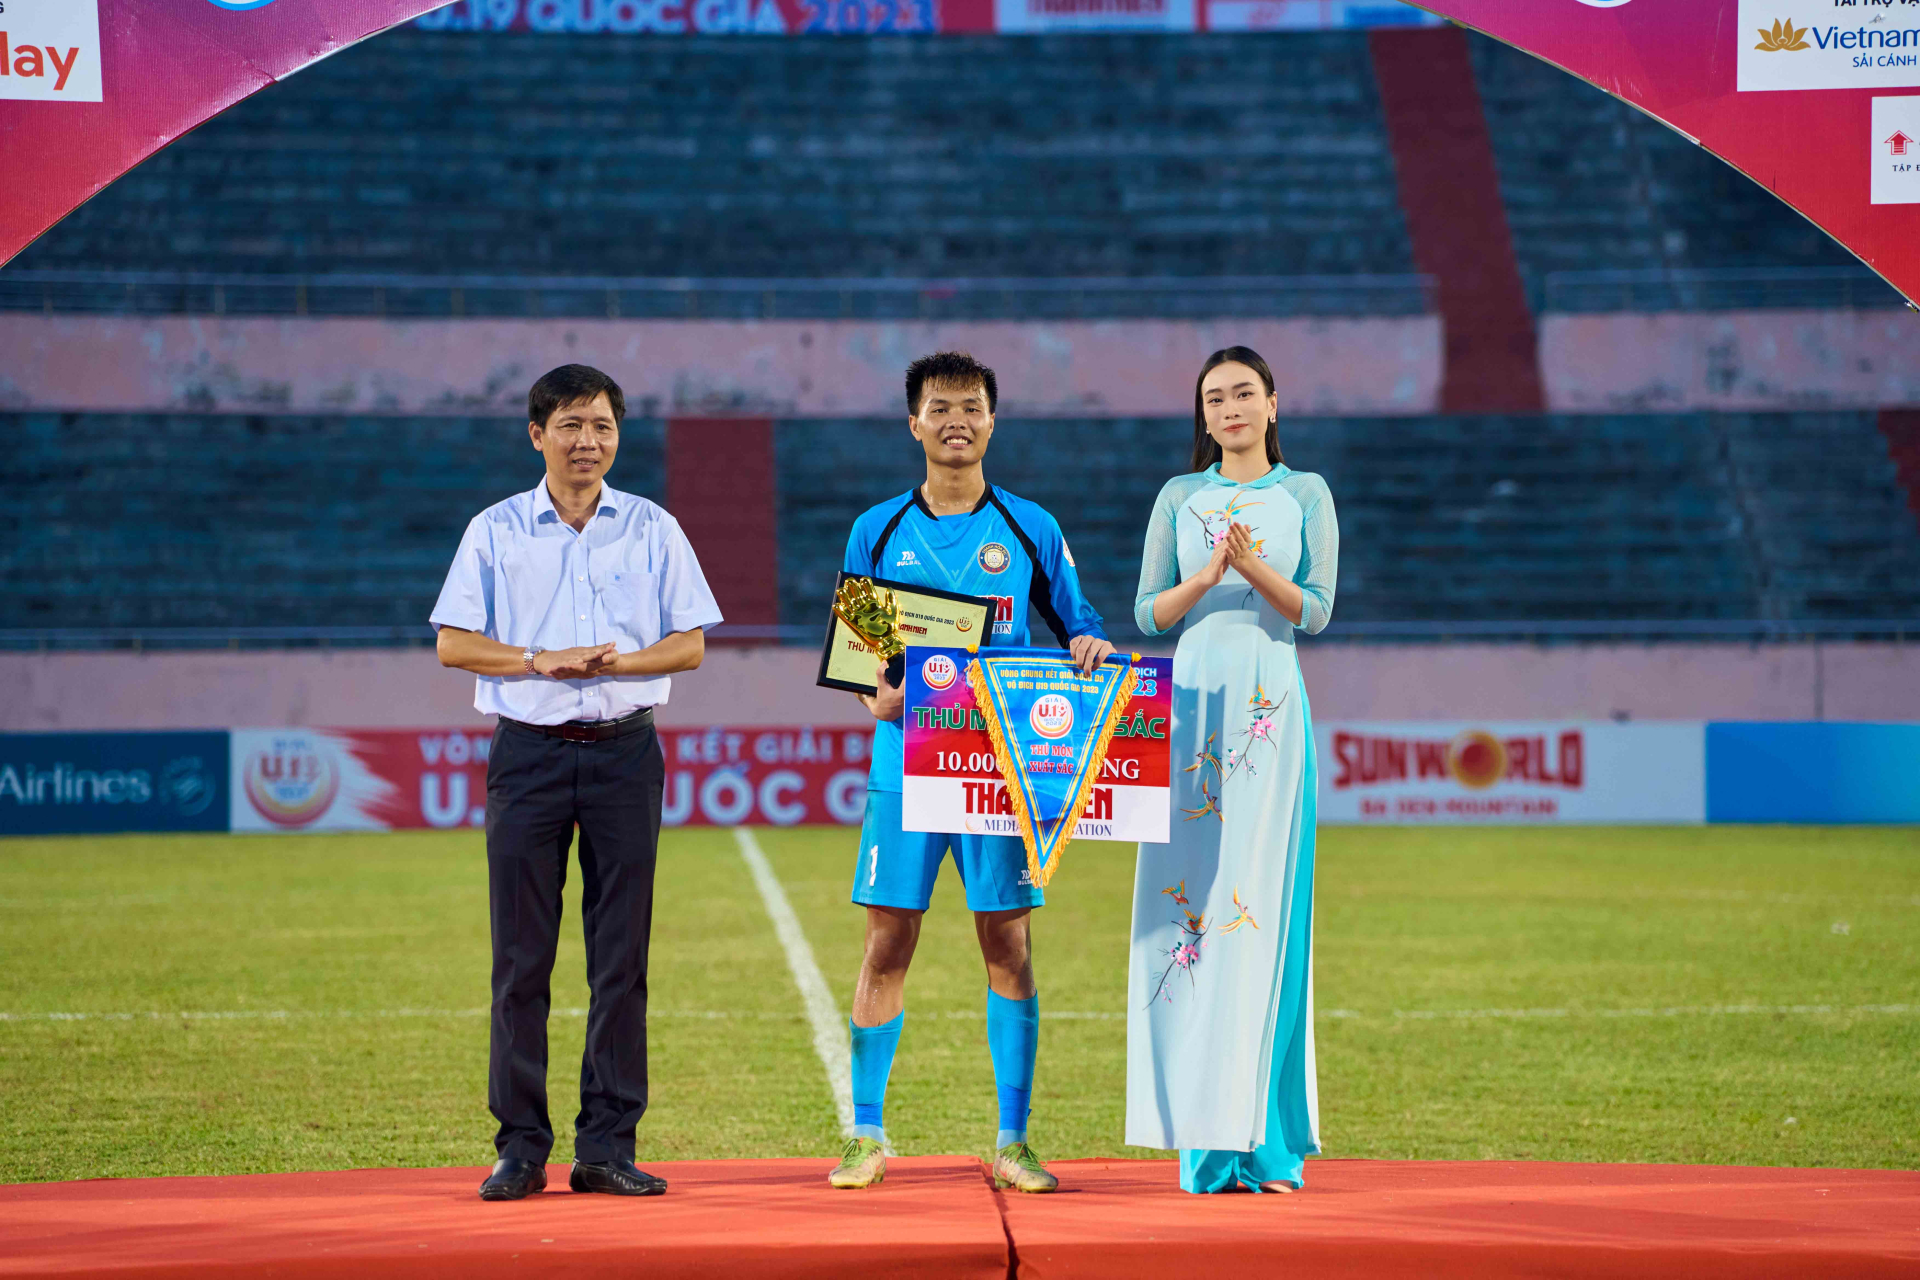 Miss Peace Vietnam 2022 - Trần Thị Ban Mai gây chú ý khi xuất hiện với vai trò người dẫn chương trình cho giải bóng đá trẻ quốc gia.